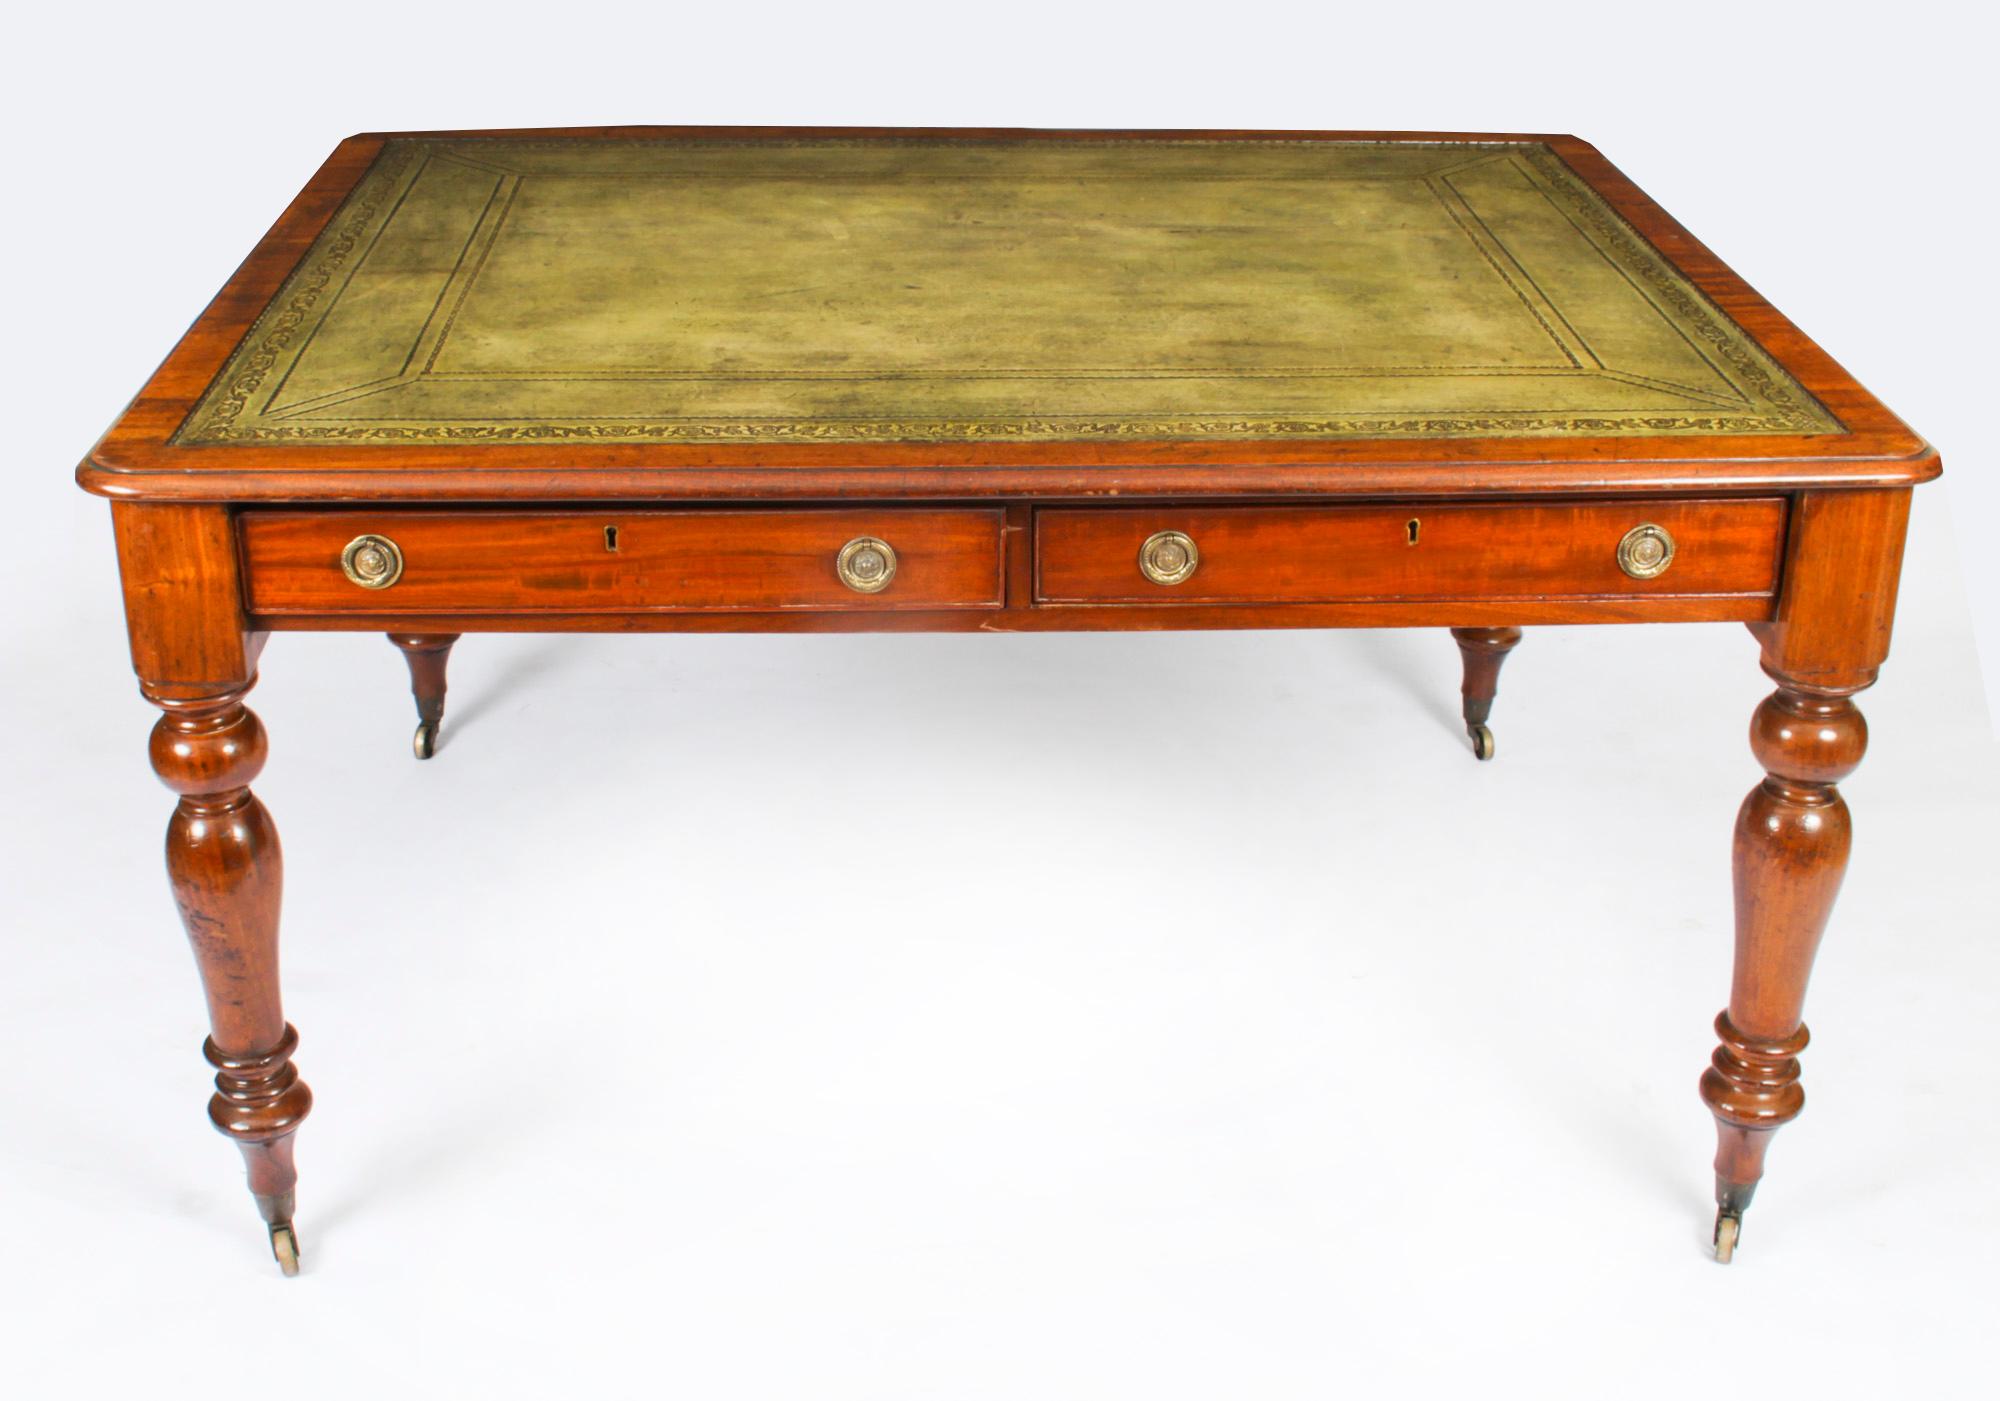 Il s'agit d'une superbe table d'écriture victorienne ancienne, fabriquée à partir d'un bel acajou flammé et datant des environs de 1860.
 
Le plateau rectangulaire est doté d'un bord mouluré et d'une surface d'écriture en cuir estampé vert délavé et